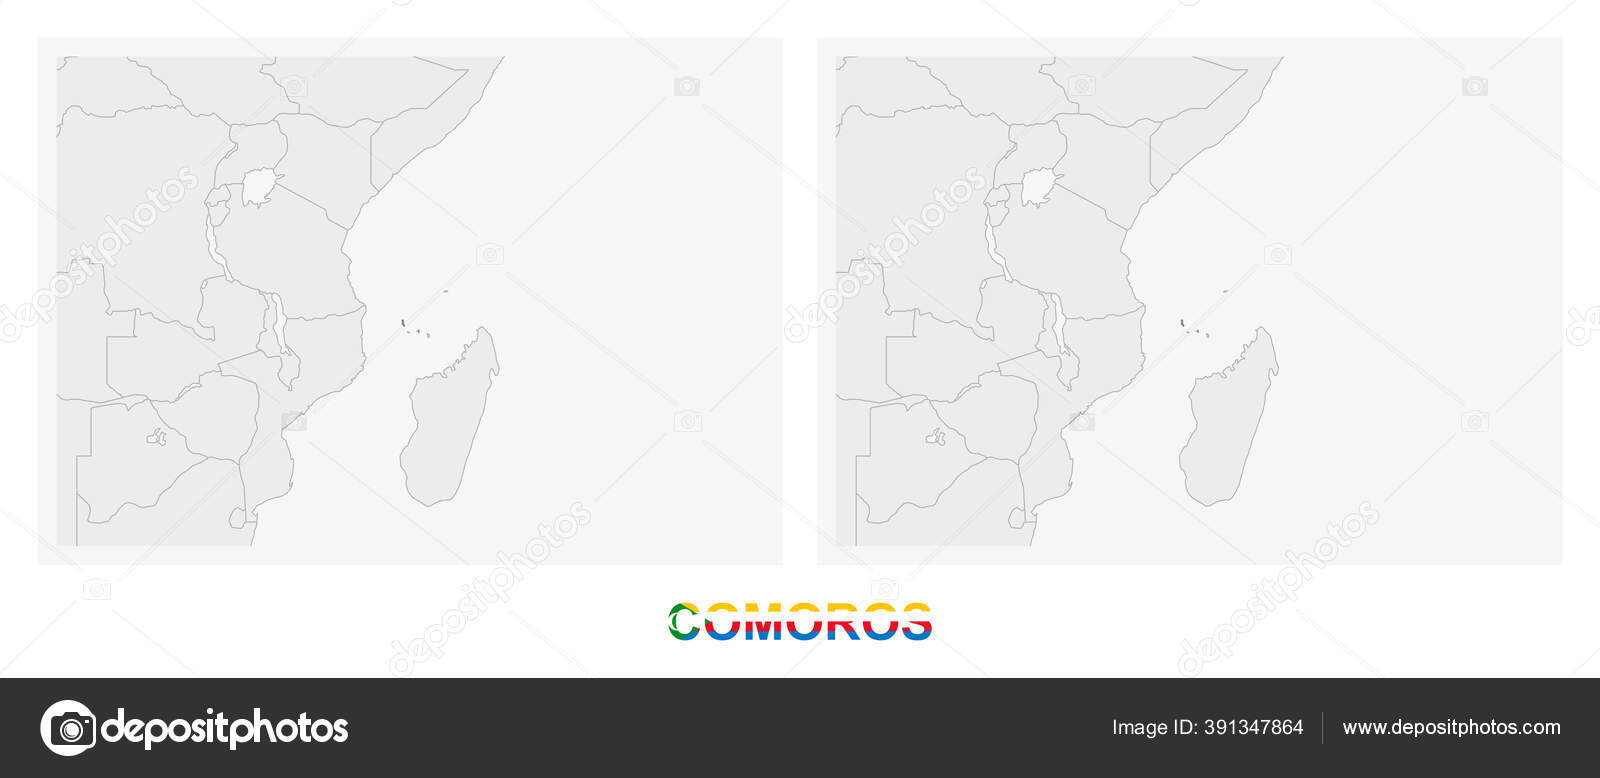 Comores Drapeau Carte La - Images vectorielles gratuites sur